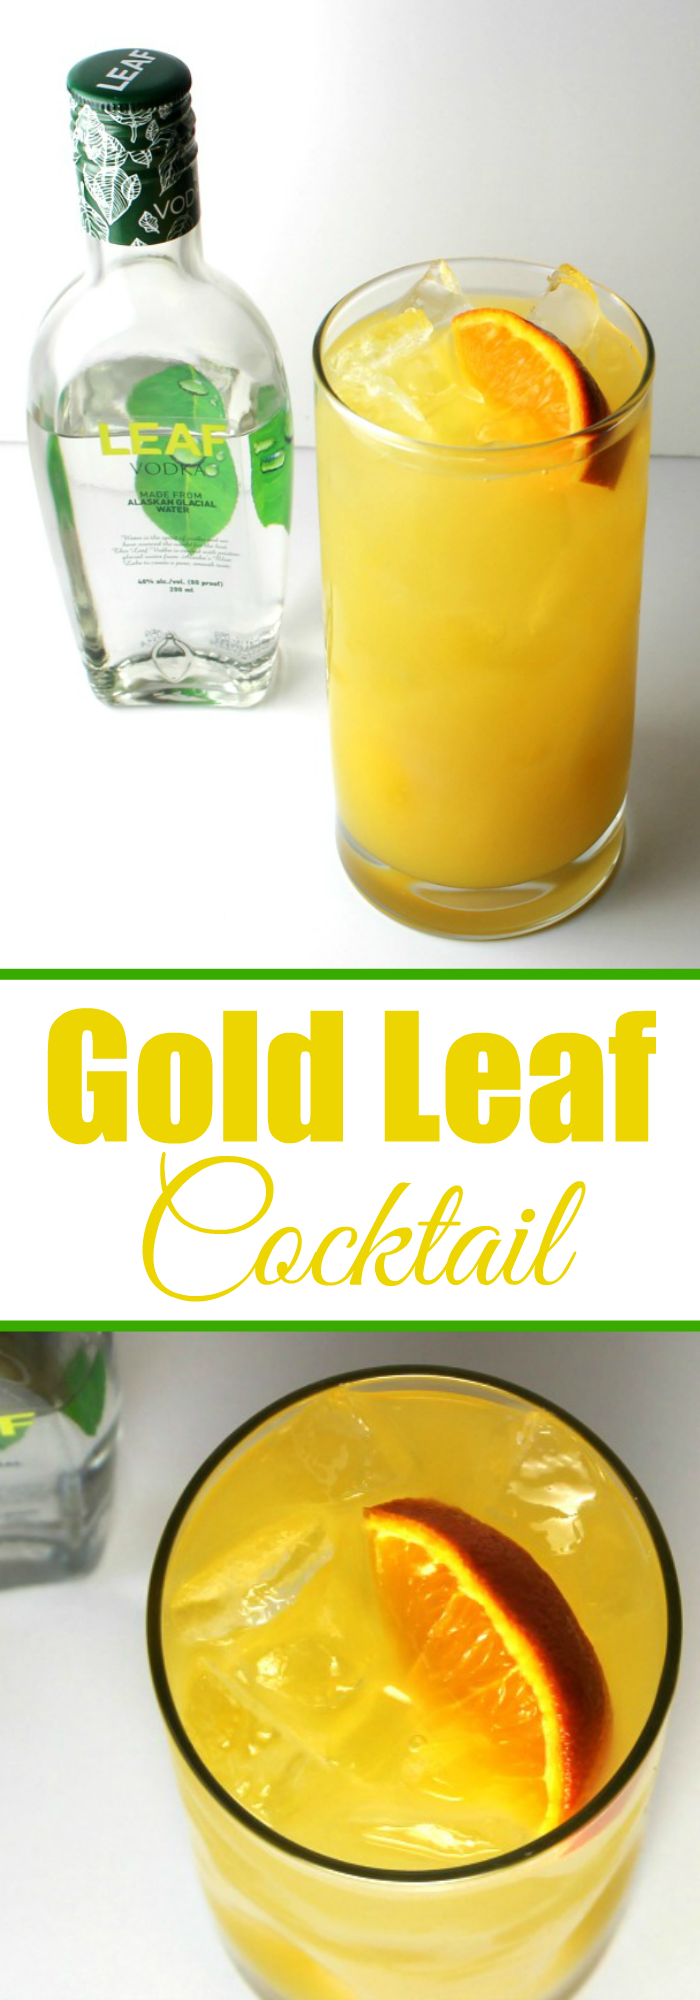 Gold Leaf Cocktail